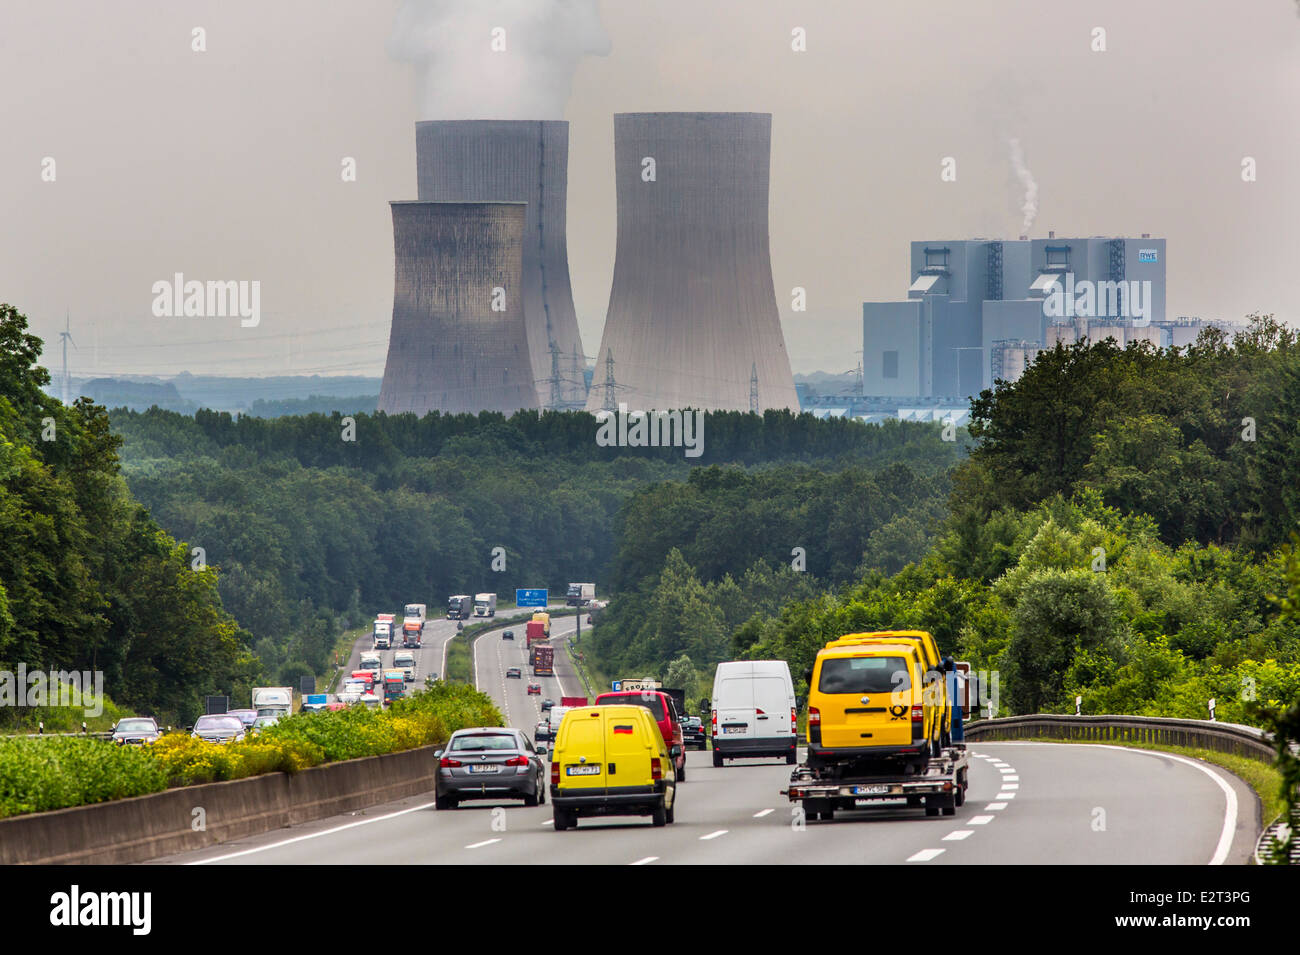 Le trafic sur l'autoroute A2, Hamm, Allemagne, coal power station Westfalen, tours de refroidissement, Banque D'Images